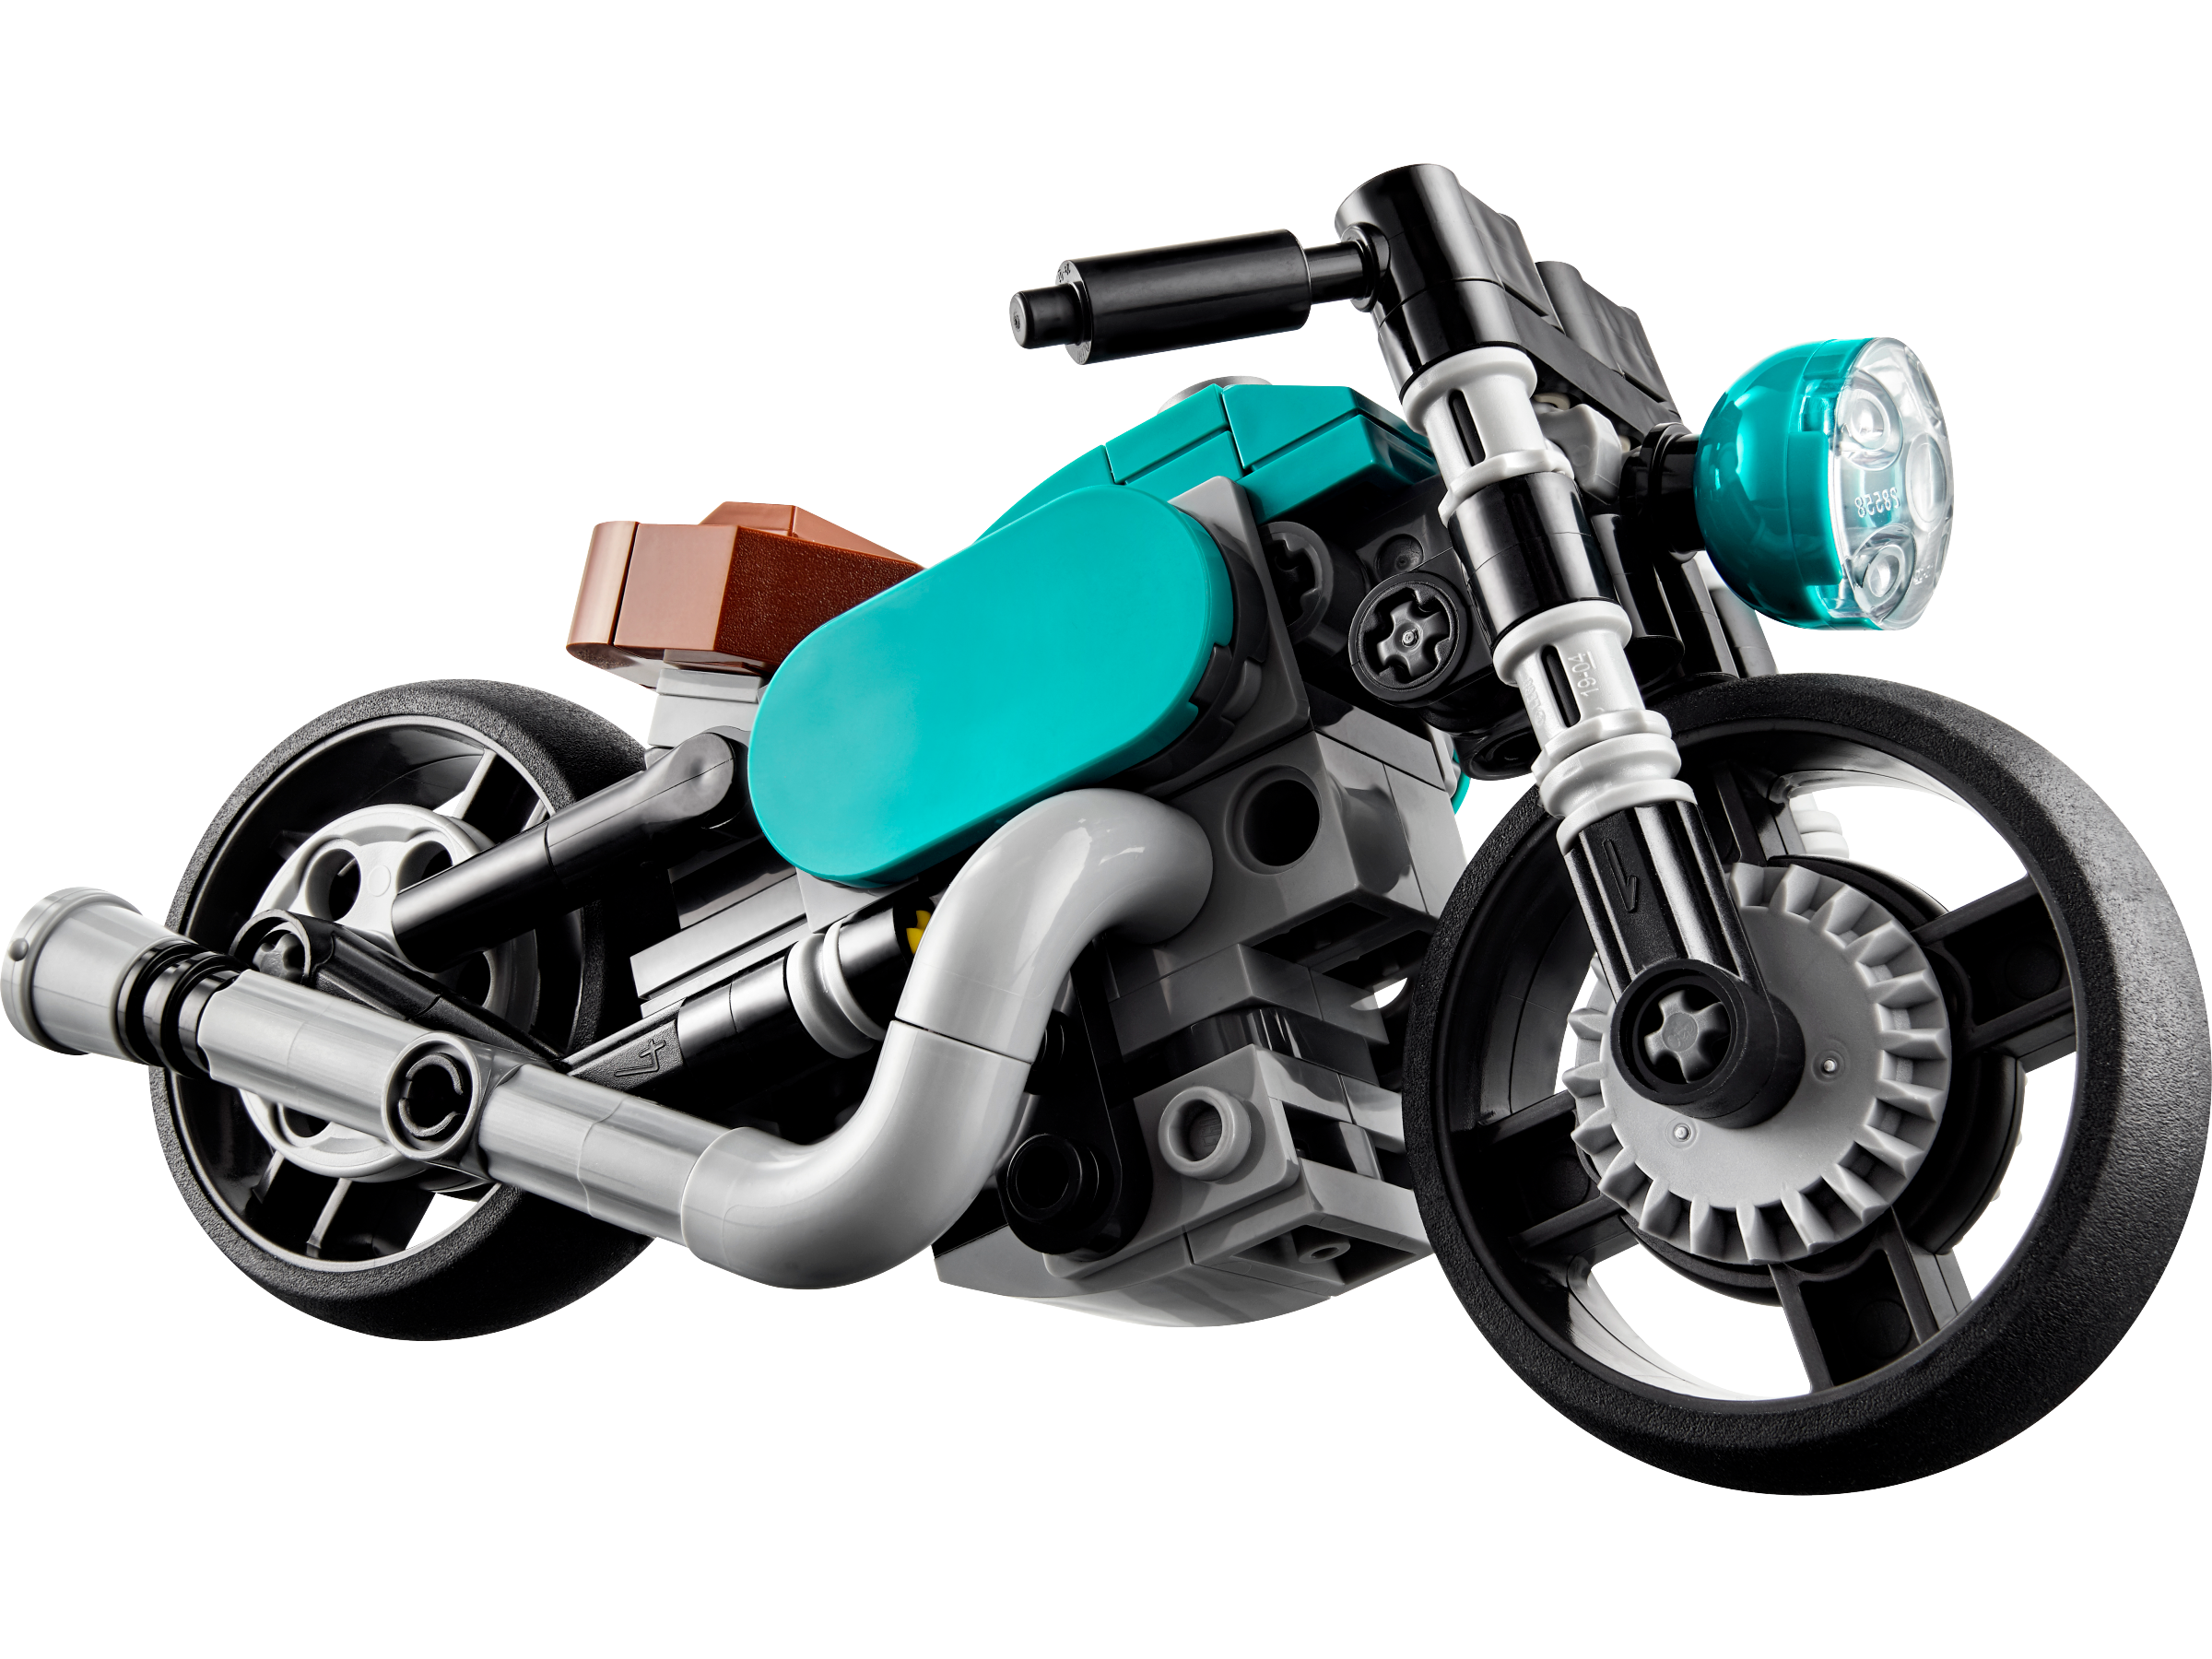 LEGO Oldtimer Motorrad